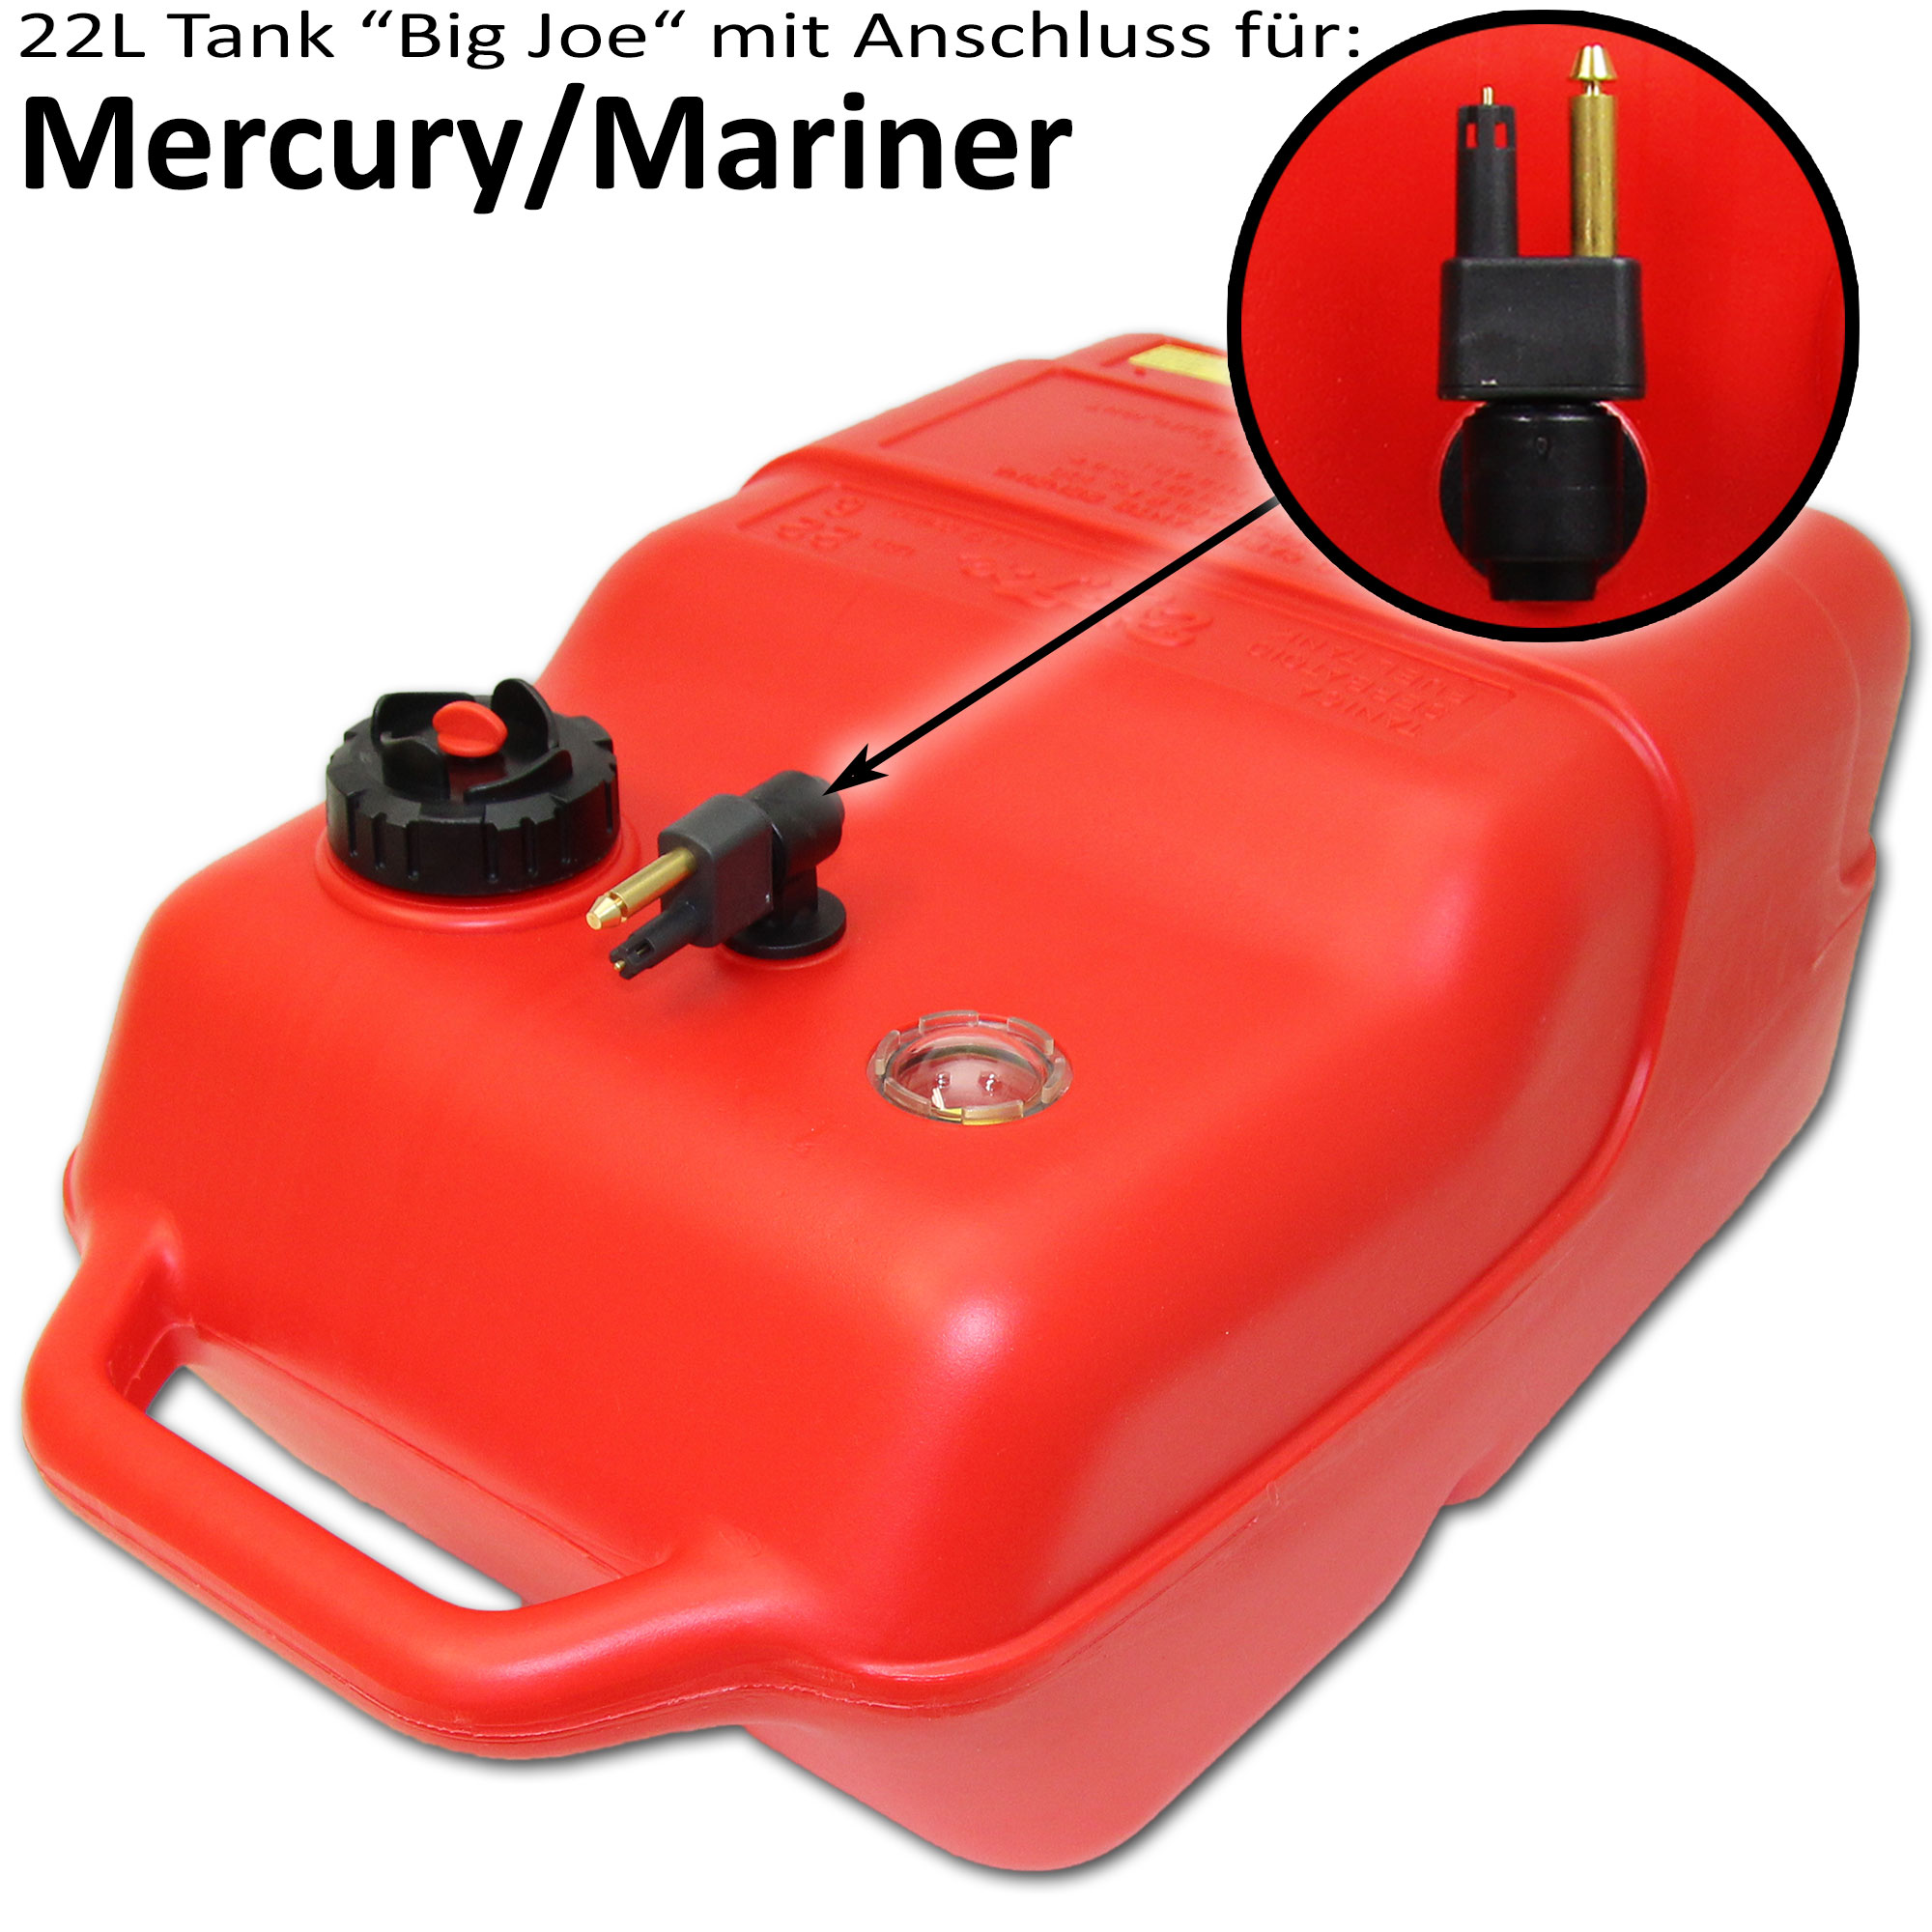 Kraftstofftank rot mit Mercury & Mariner Anschluss / Füllstandsanzeige manuell